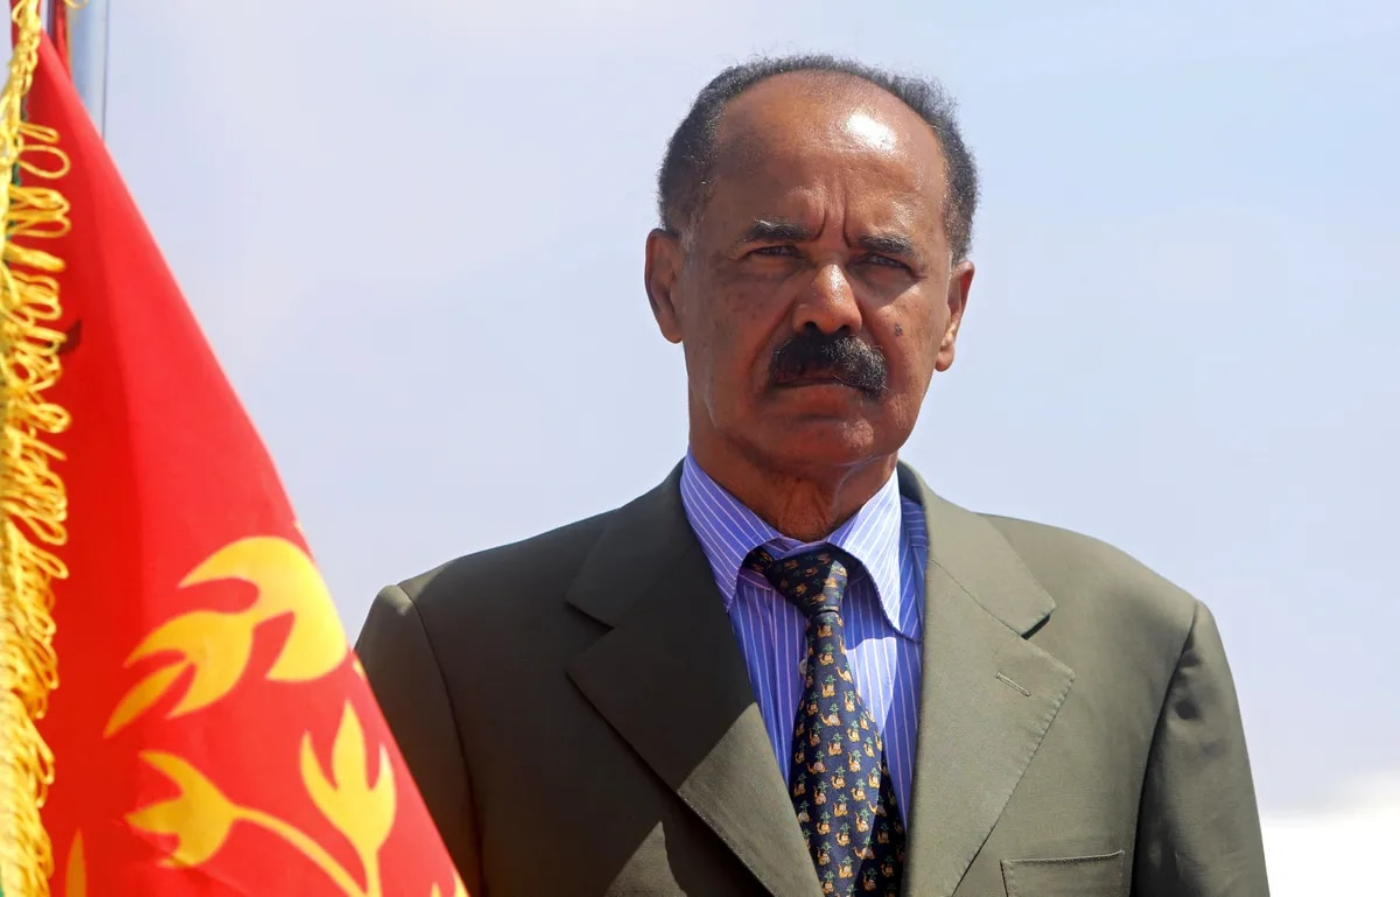 Il presidente eritreo Isaias Afwerki ha sfruttato la guerra per estendere la sua influenza militare in tutta la regione, facendo leva su un ruolo di re nella vicina Etiopia.